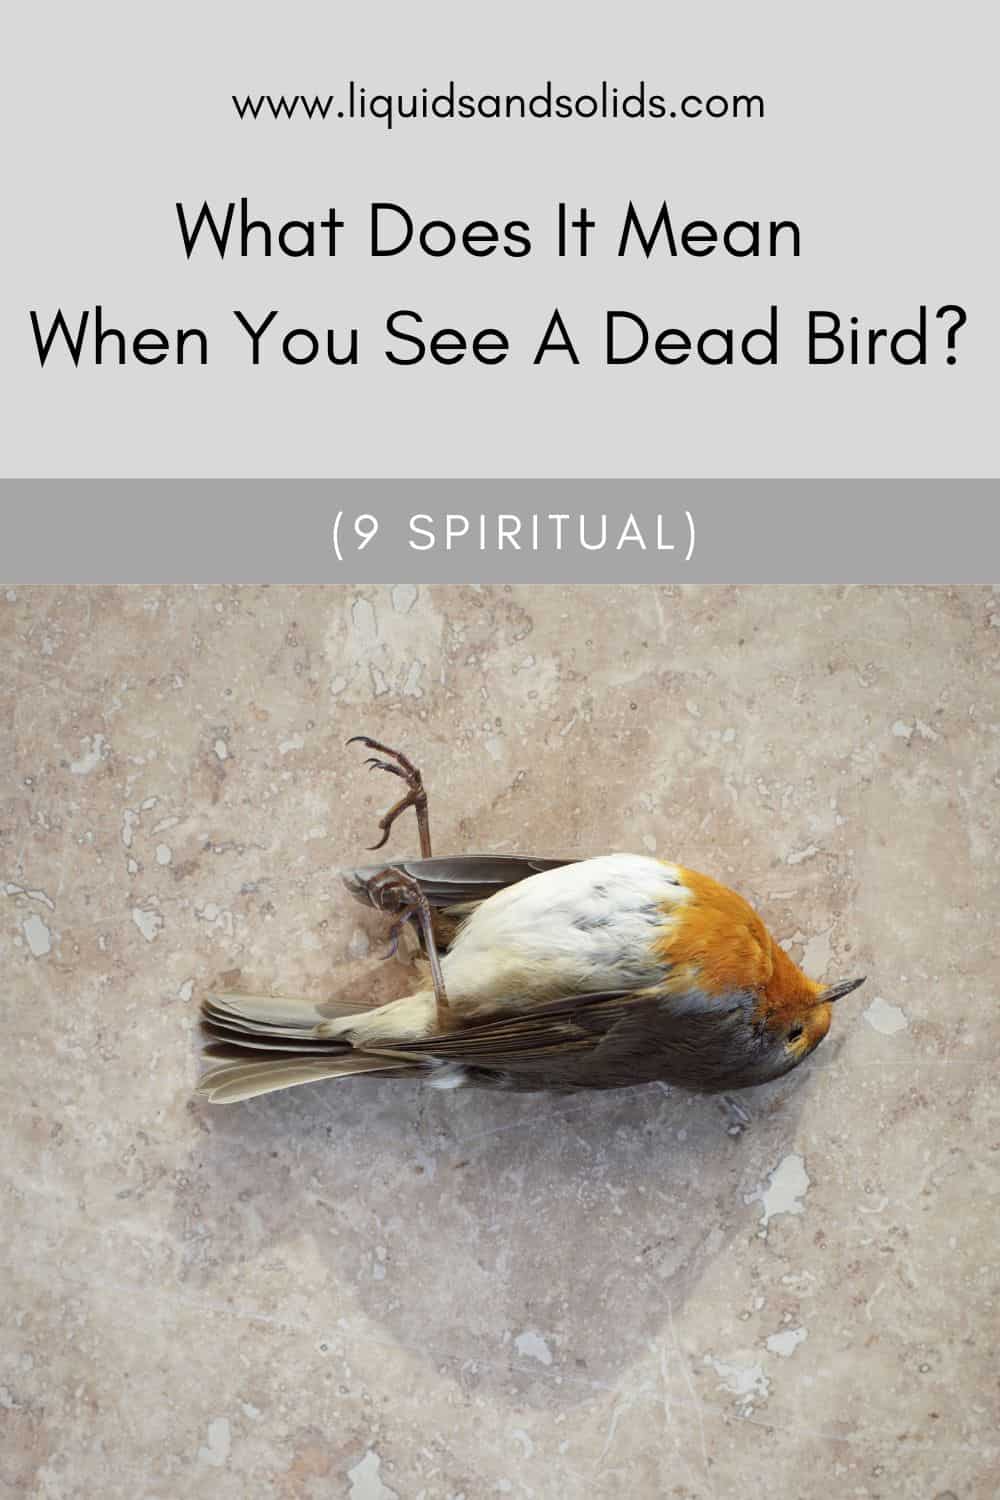  Mida tähendab see, kui sa näed surnud lindu? (9 vaimset tähendust)